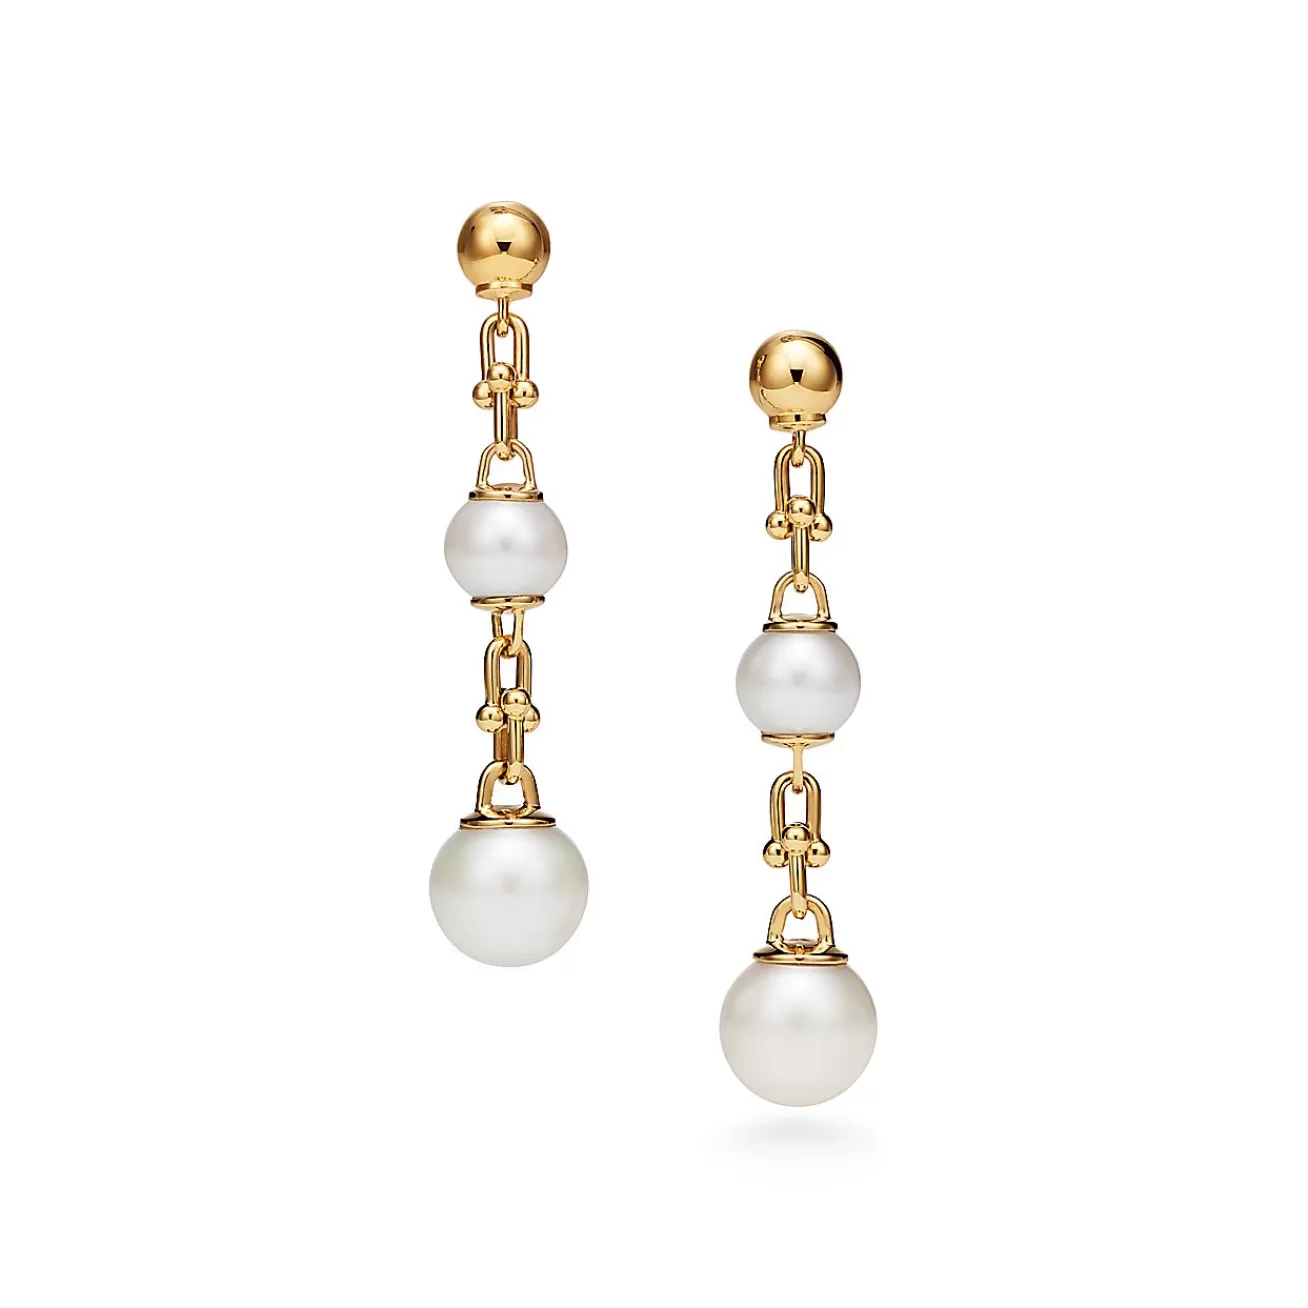 Tiffany & Co. Tiffany HardWear Triple Drop Link Earrings in Yellow Gold with Freshwater Pearls | ^ Earrings | Gold Jewelry